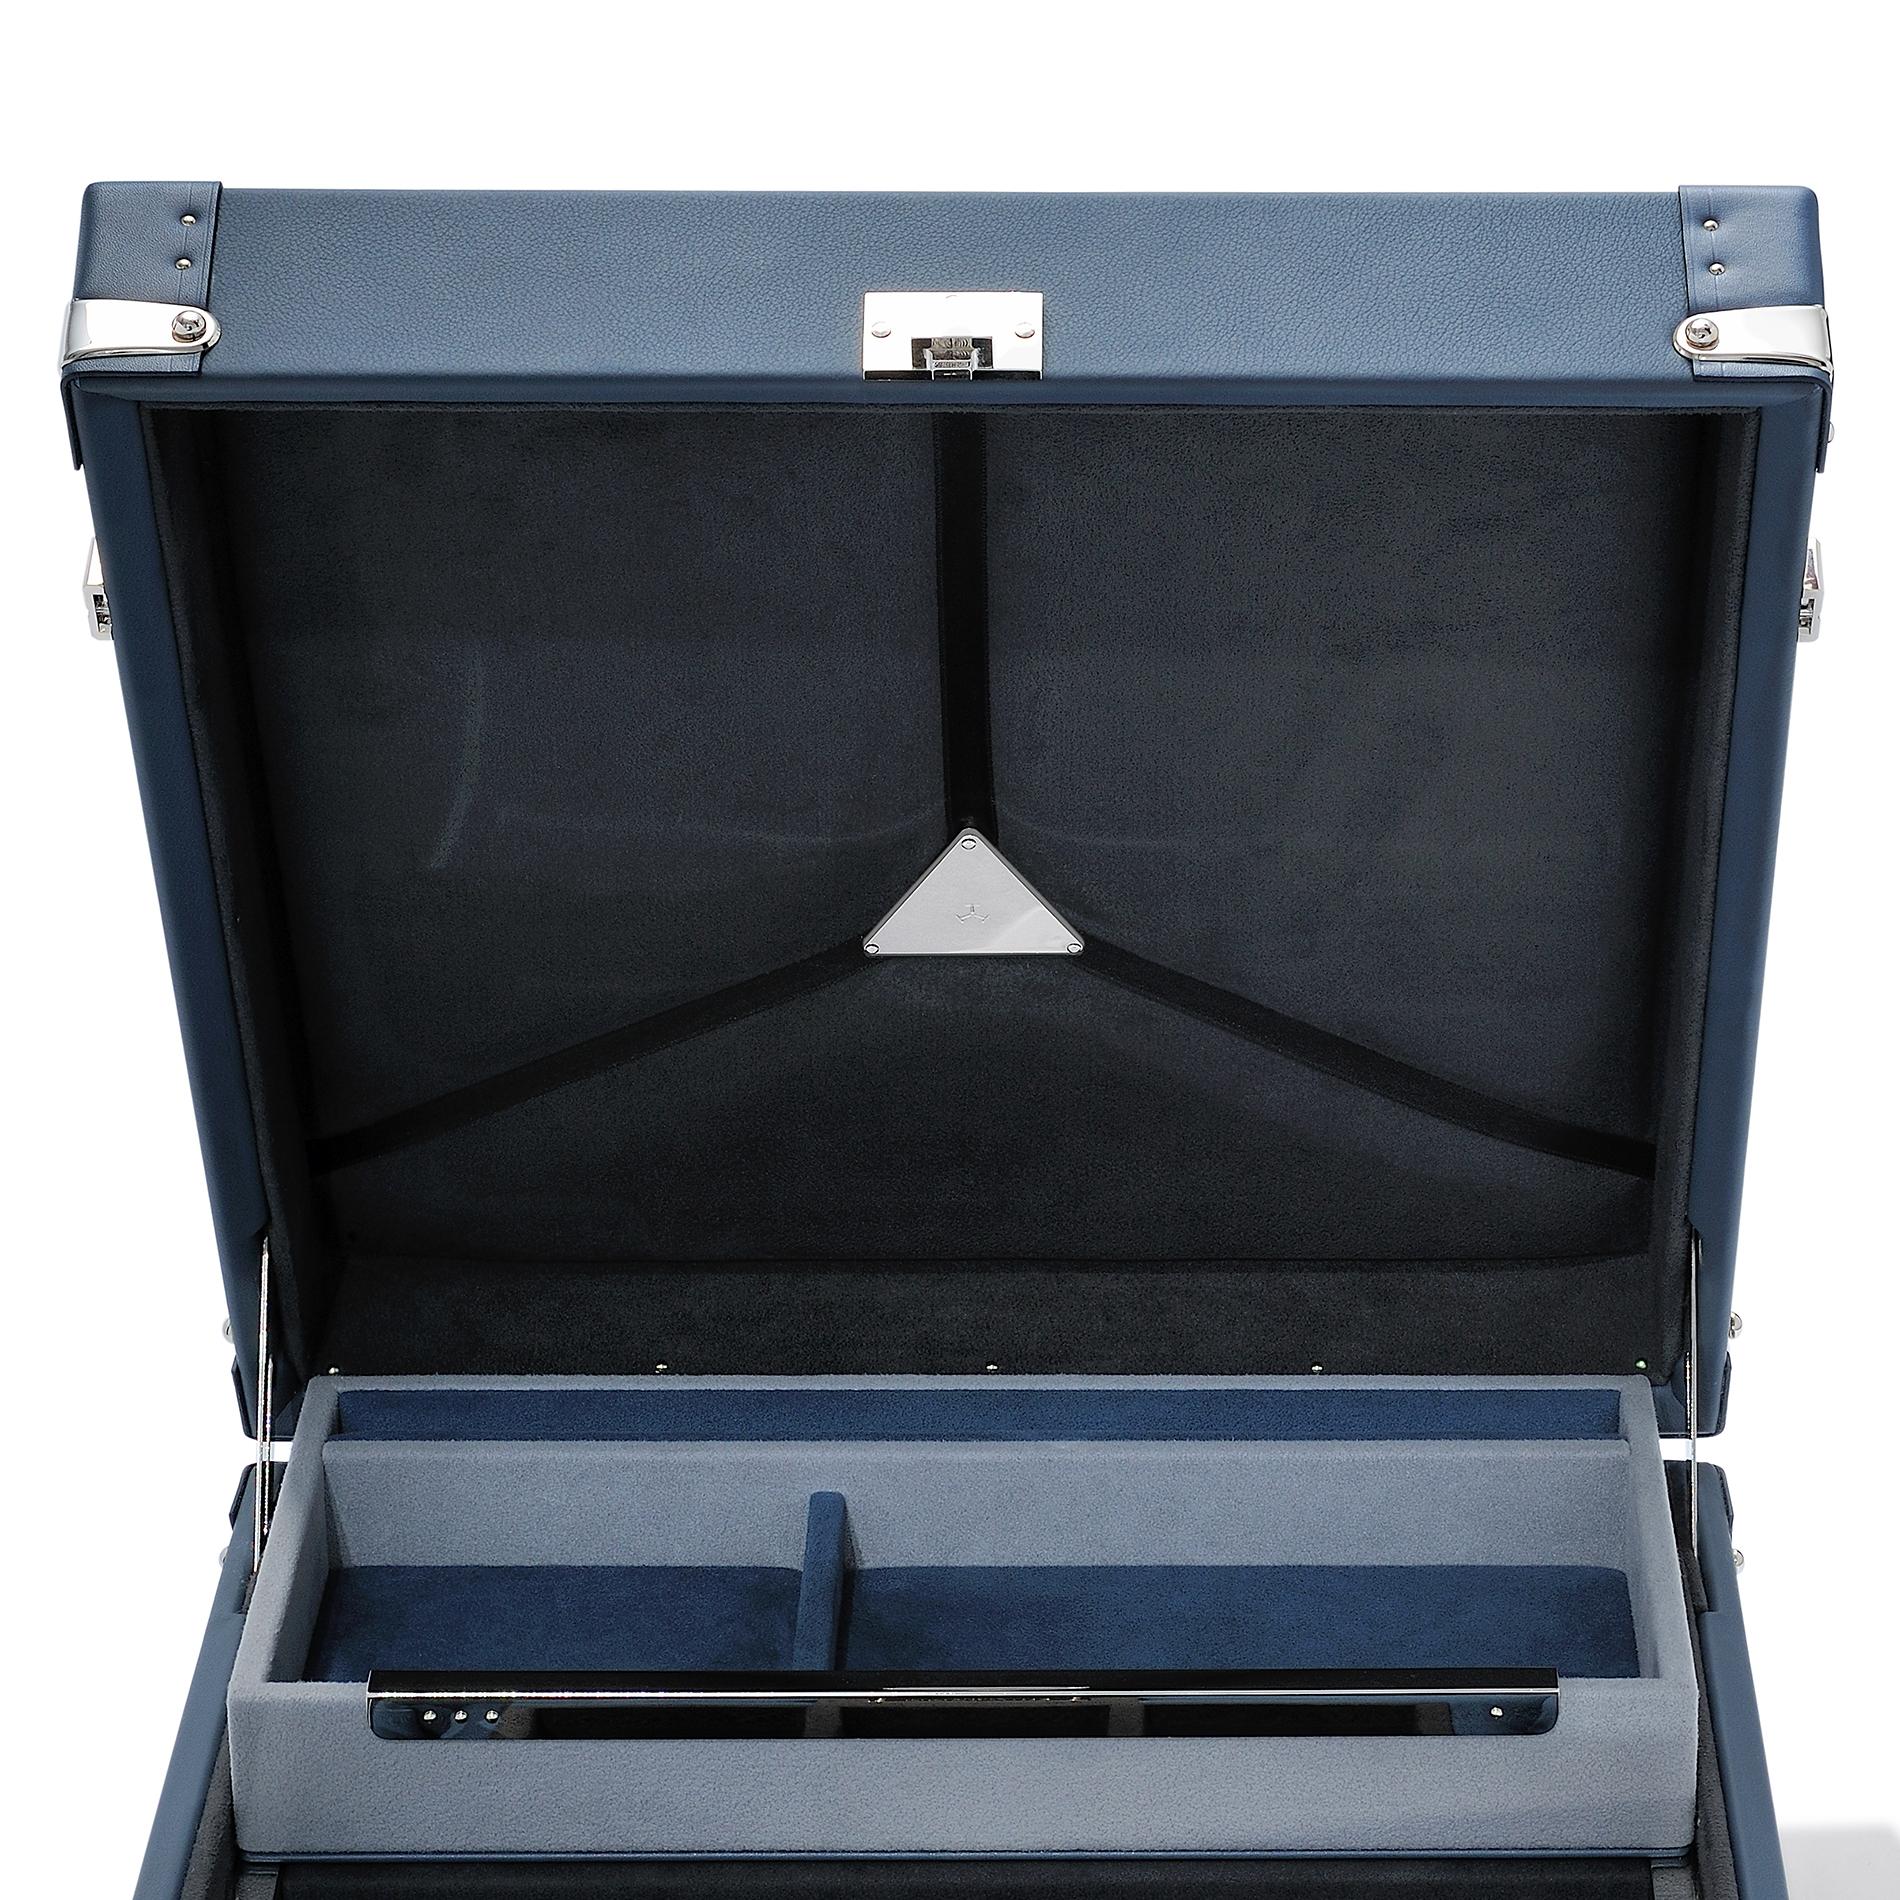 Koffer Luxusuhr blau mit blauem Rindsleder bezogen
Ummantelung, Kasten mit Details und Veredelungen aus poliertem Nickel
Messing. Polsterung und pad in dinamica Schiefer schwarz und silber
graue Mikrofaser. Mit drei geschäumten Gehäusen für Uhren